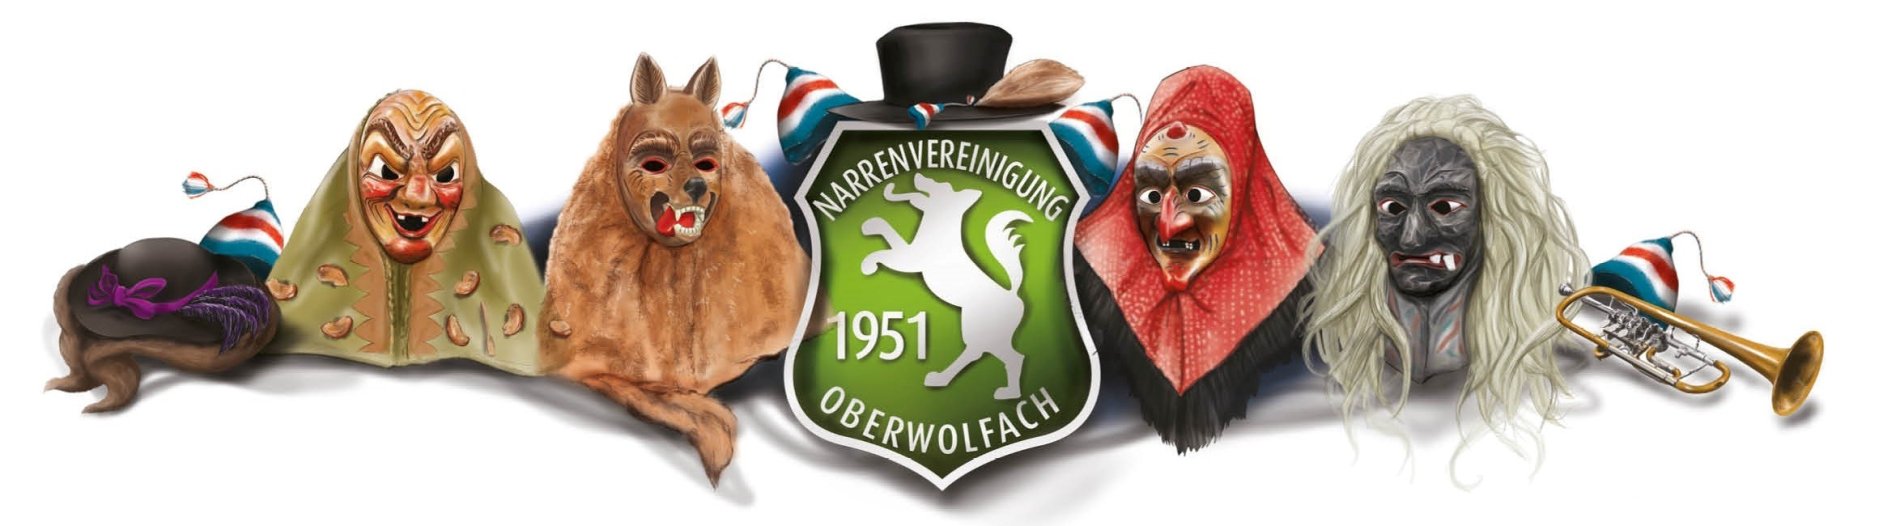 Logo Narrenvereinigung / Urheber: Narrenvereinigung Oberwolfach